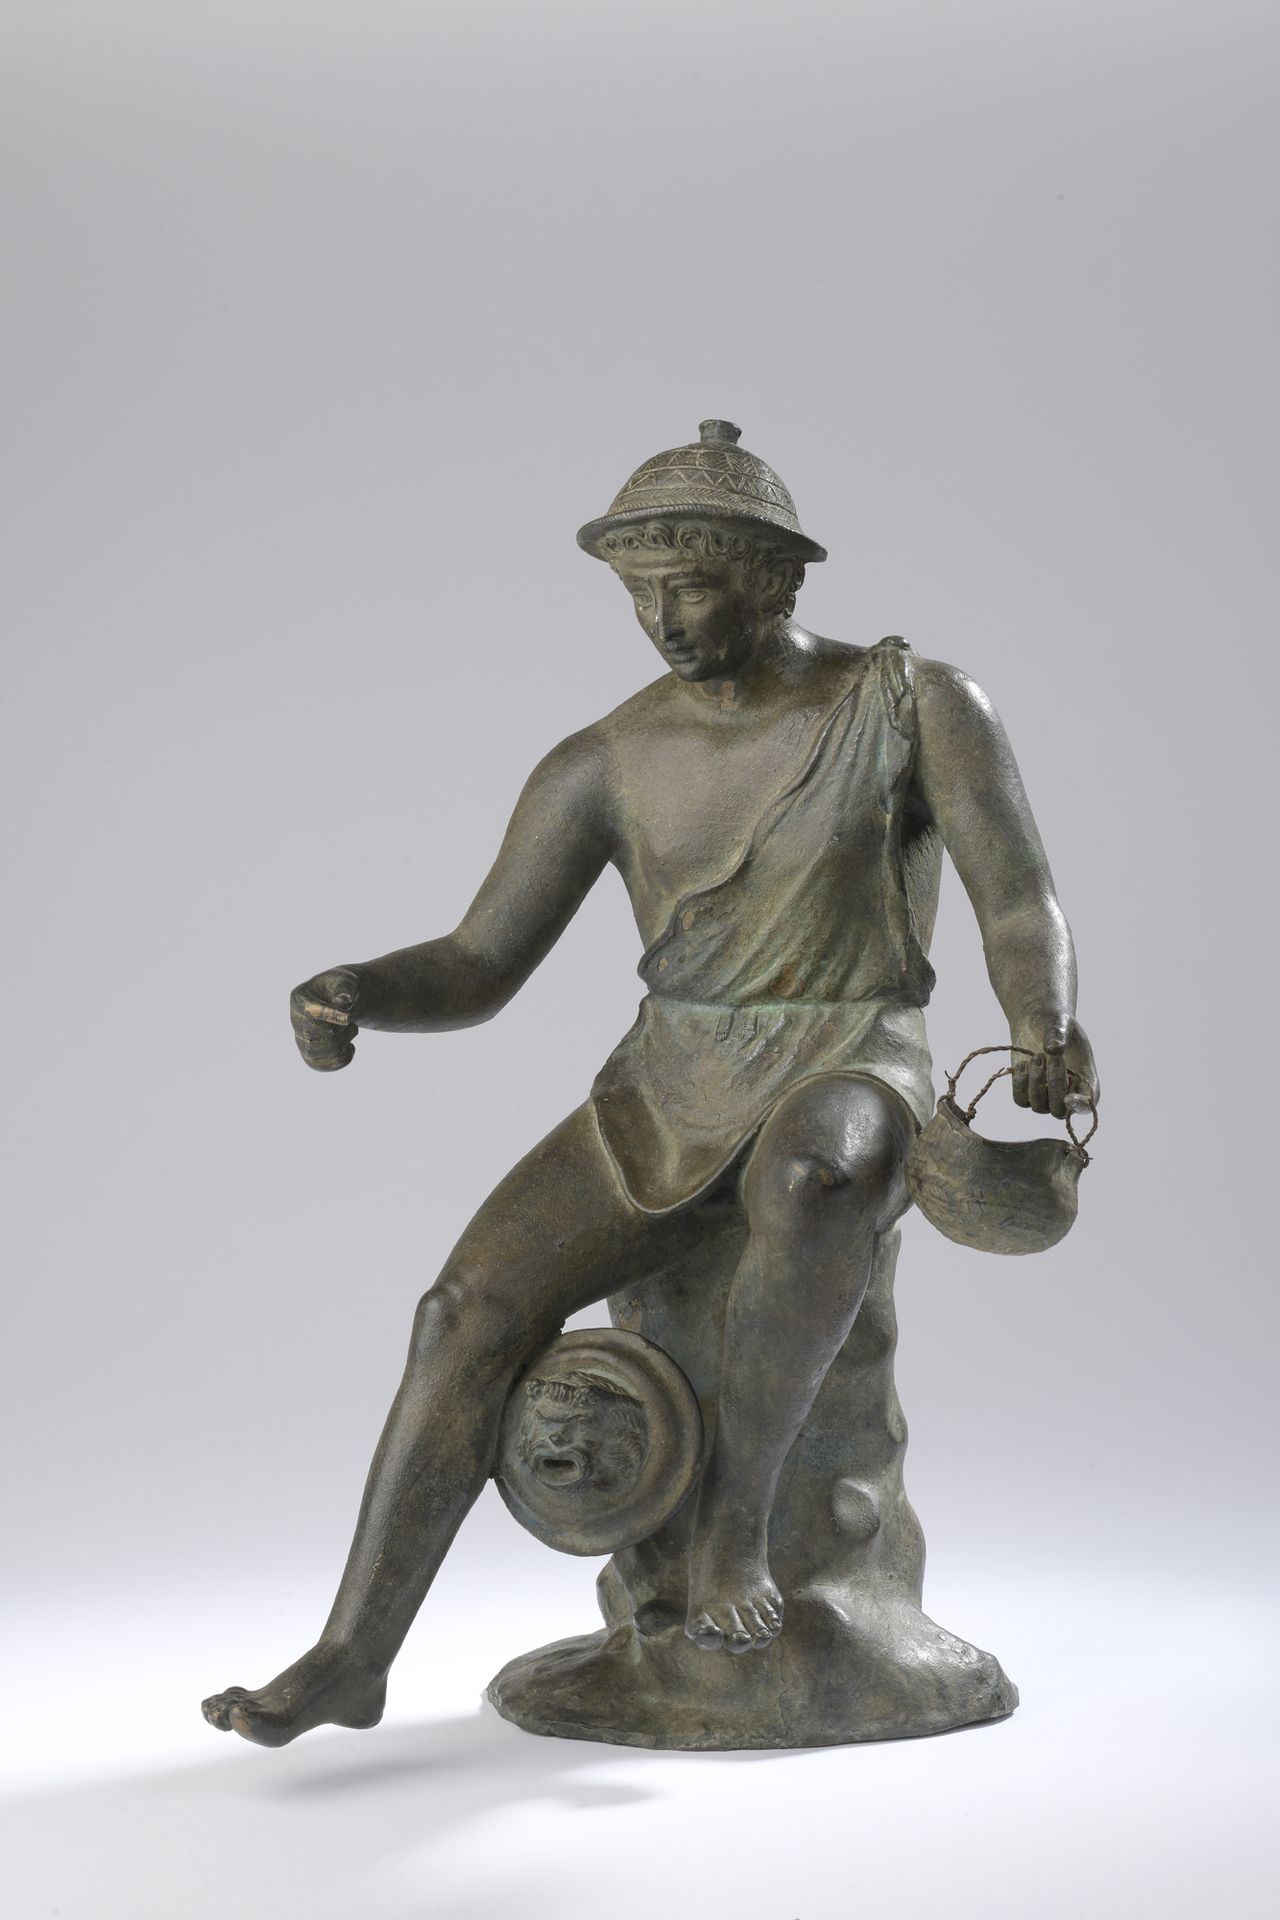 Null 可能是 19 世纪意大利作品，仿古
坐着的年轻人（水星？） 
绿色青铜证明。
H.37.5 厘米